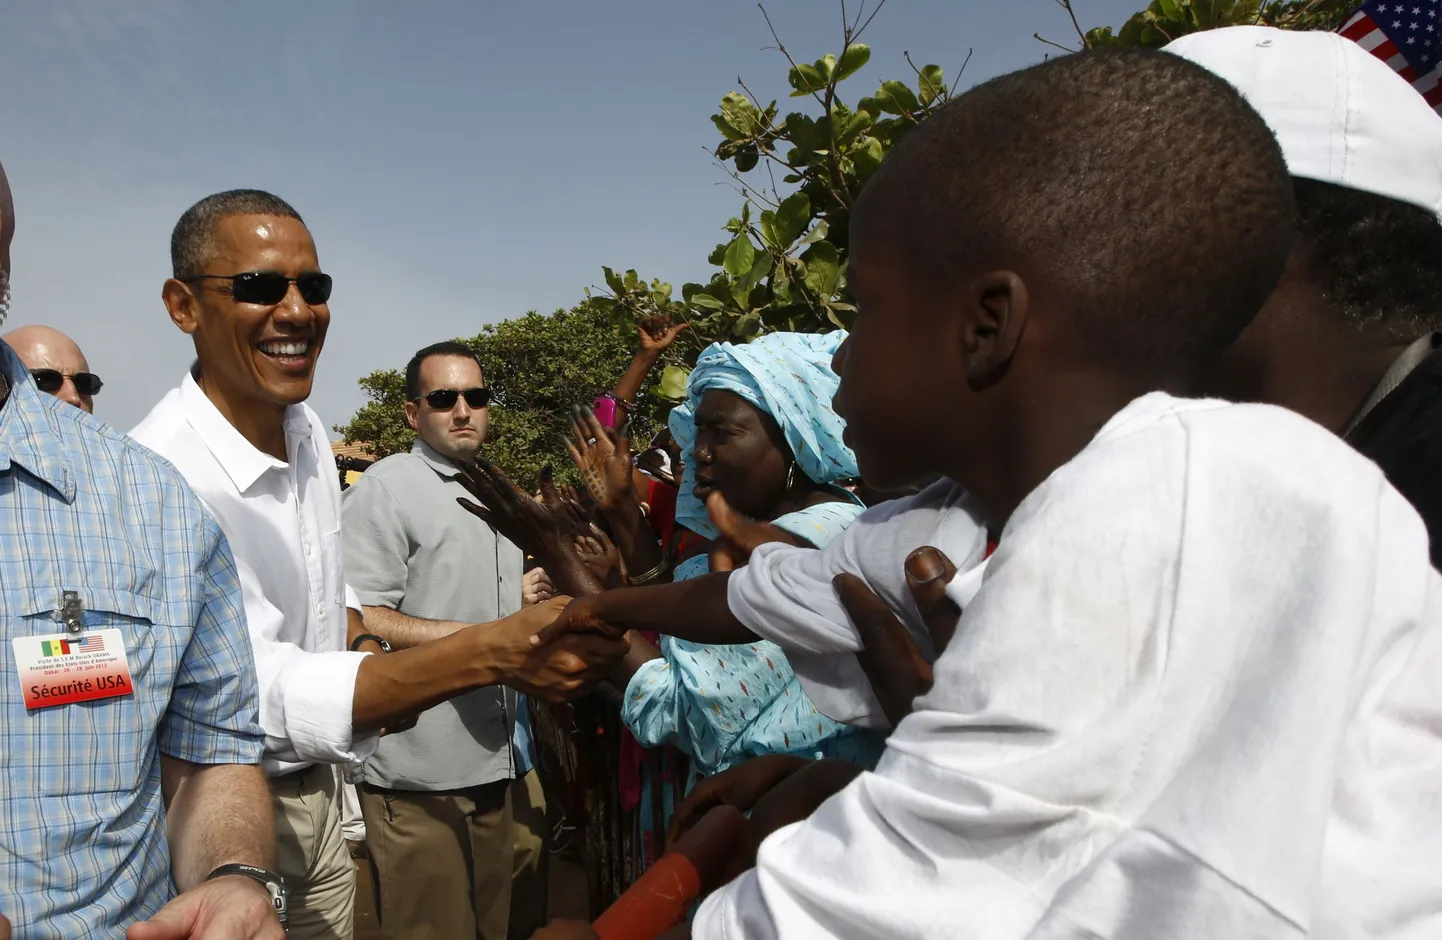 Барака Обама пообещал выделить африканцам семь миллиардов долларов на развитие электроэнергетики.